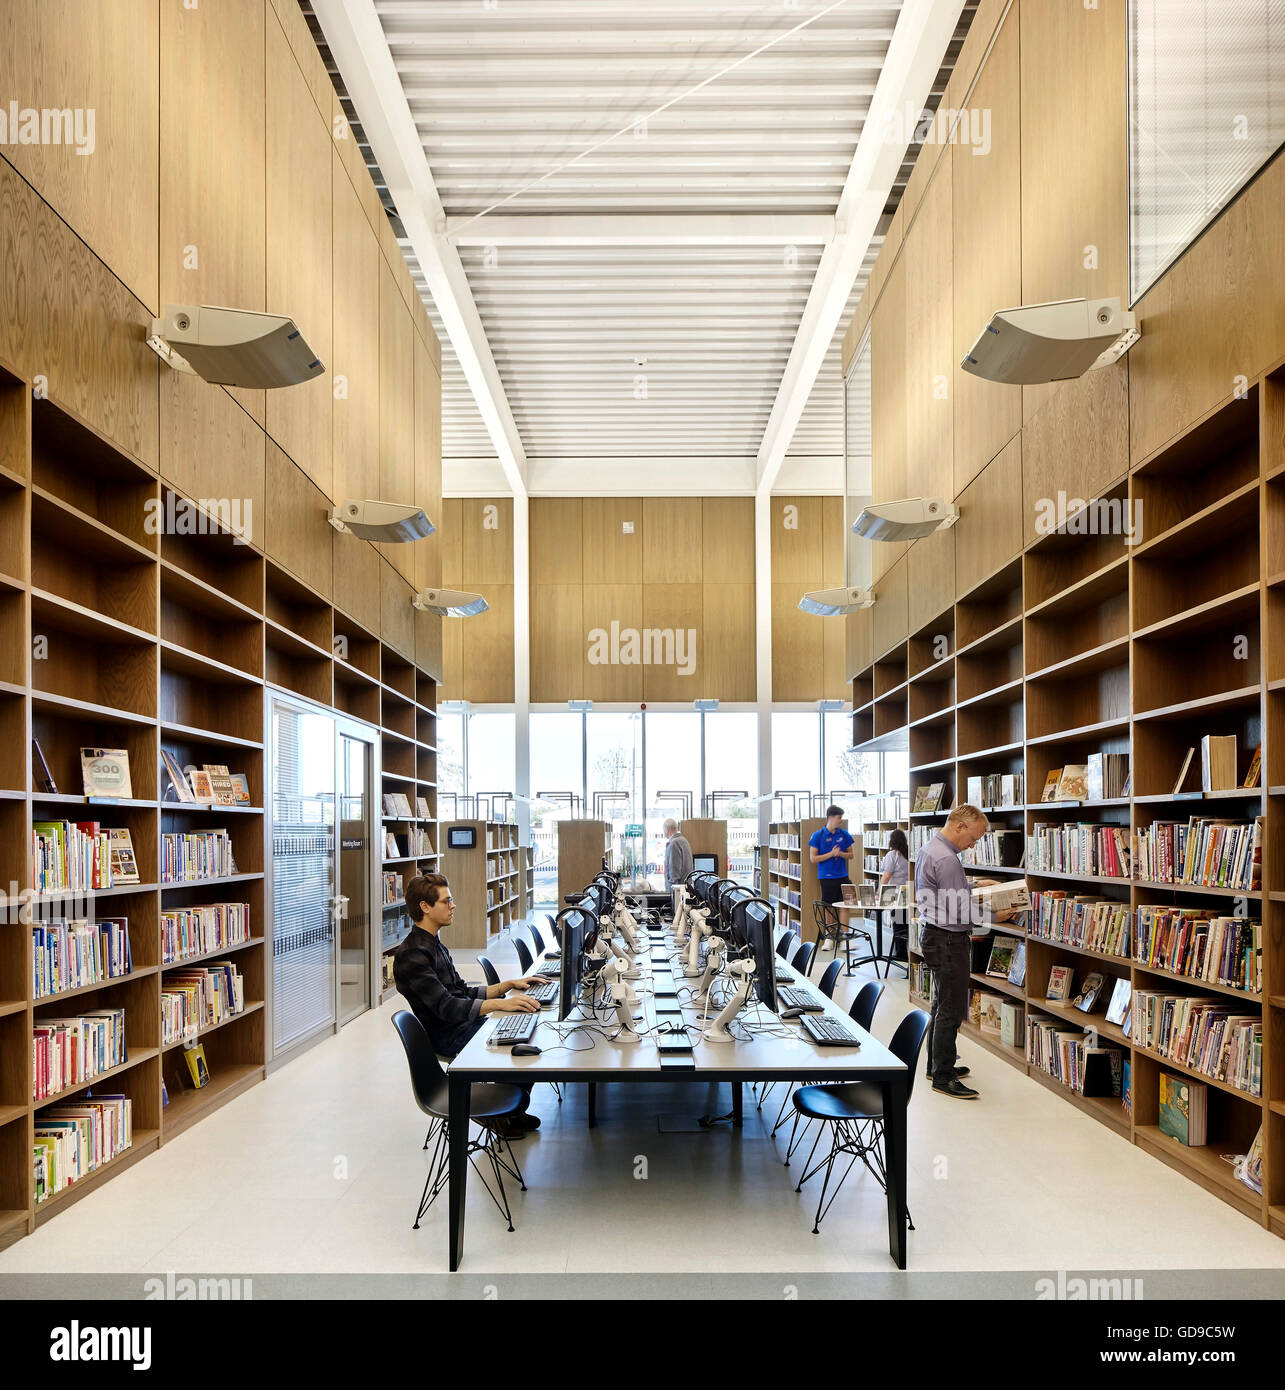 Bibliothek-Einrichtung mit Buch Gänge und es europäischen Forschungsraums. Hebburn Central, Hebburn, Vereinigtes Königreich. Architekt: Friedrich Braun, 2016. Stockfoto